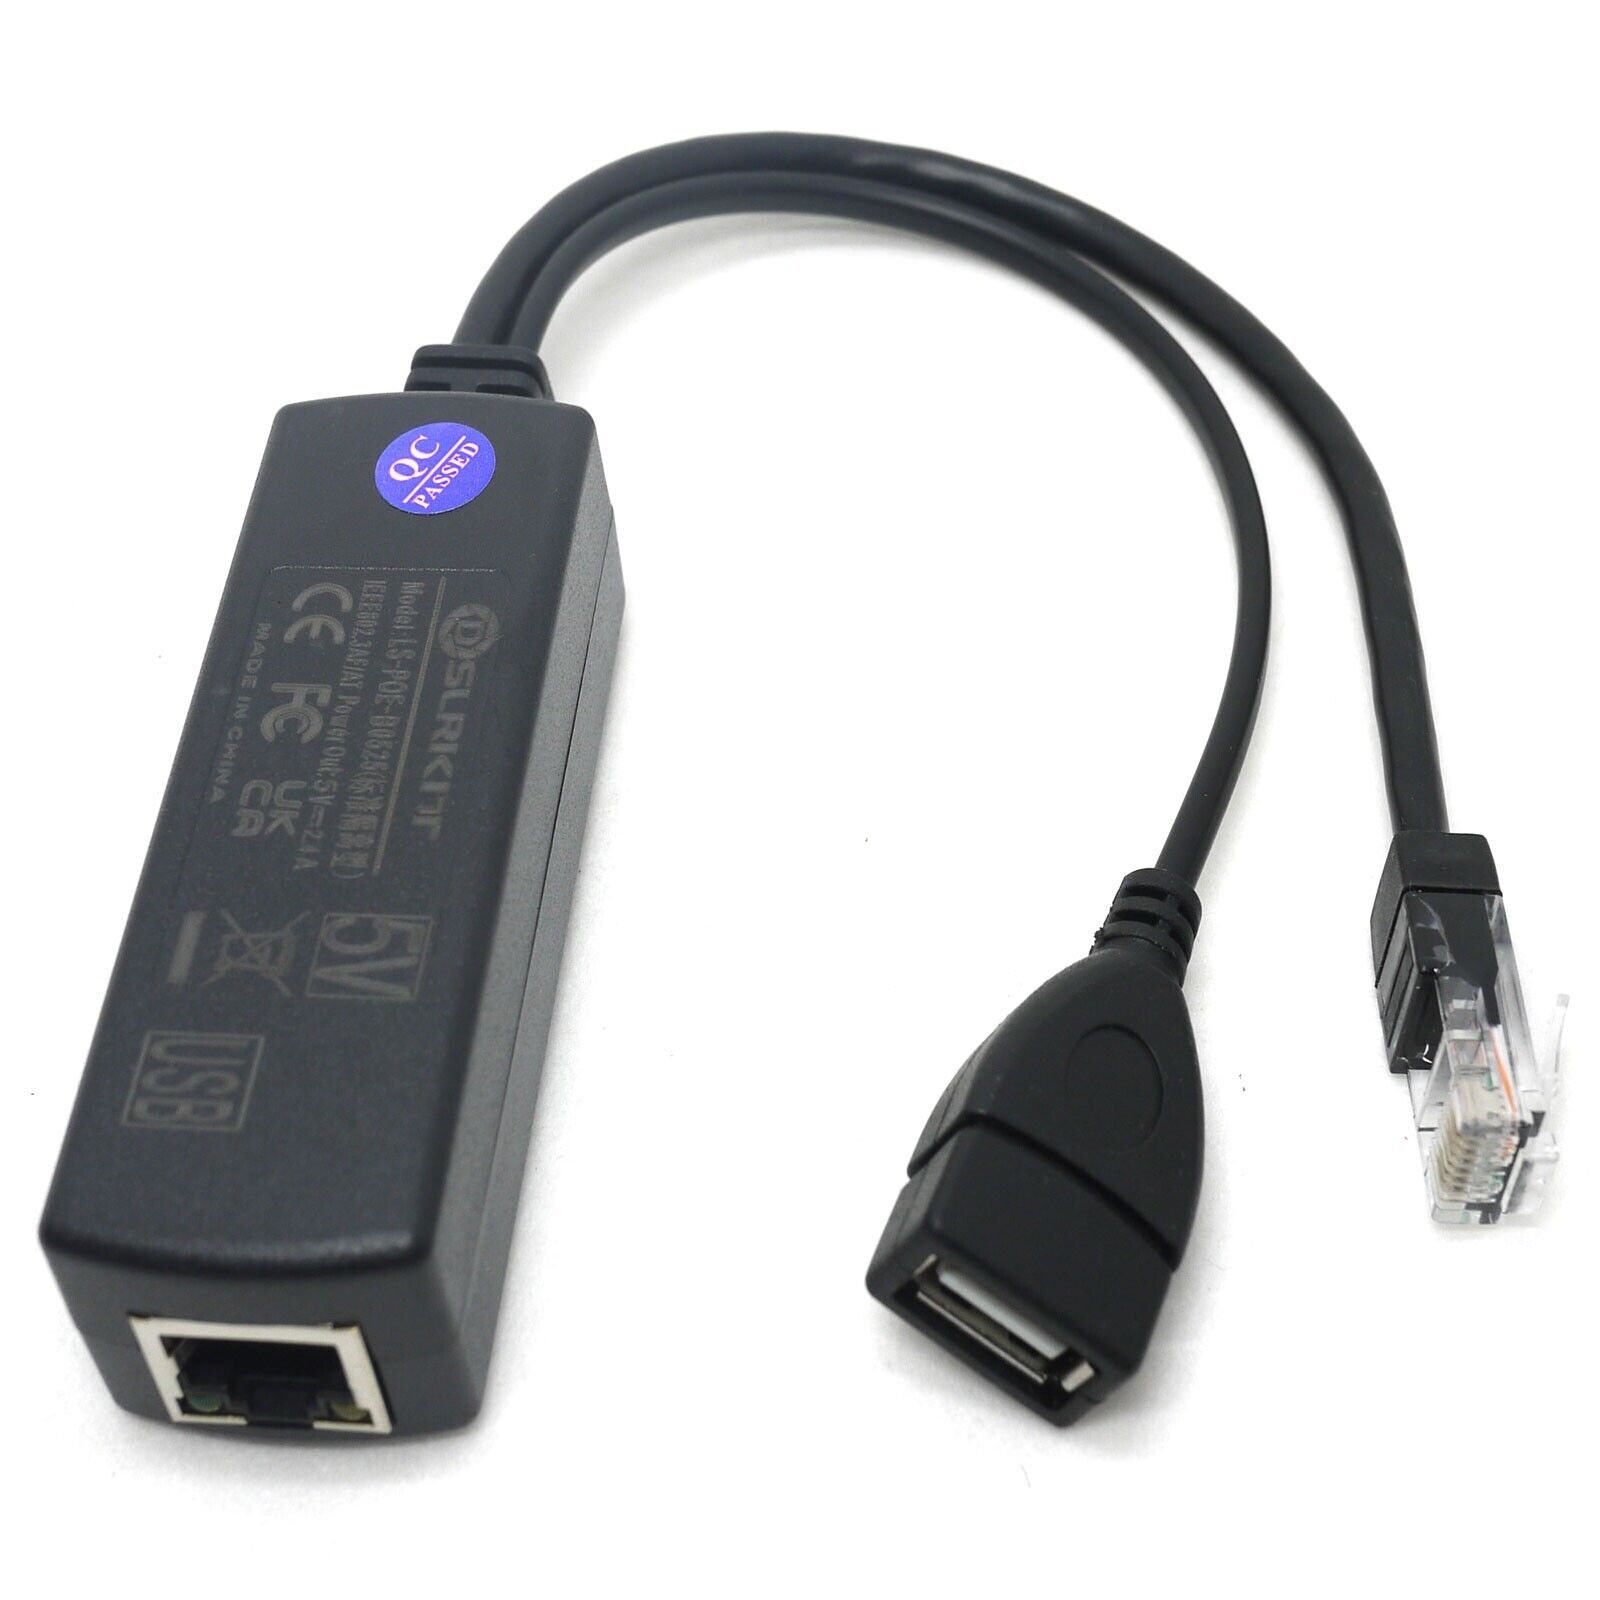 Active PoE Splitter 48V to 5V 5.2V 2.4A USB TYPE A Female 802.3af for tablet